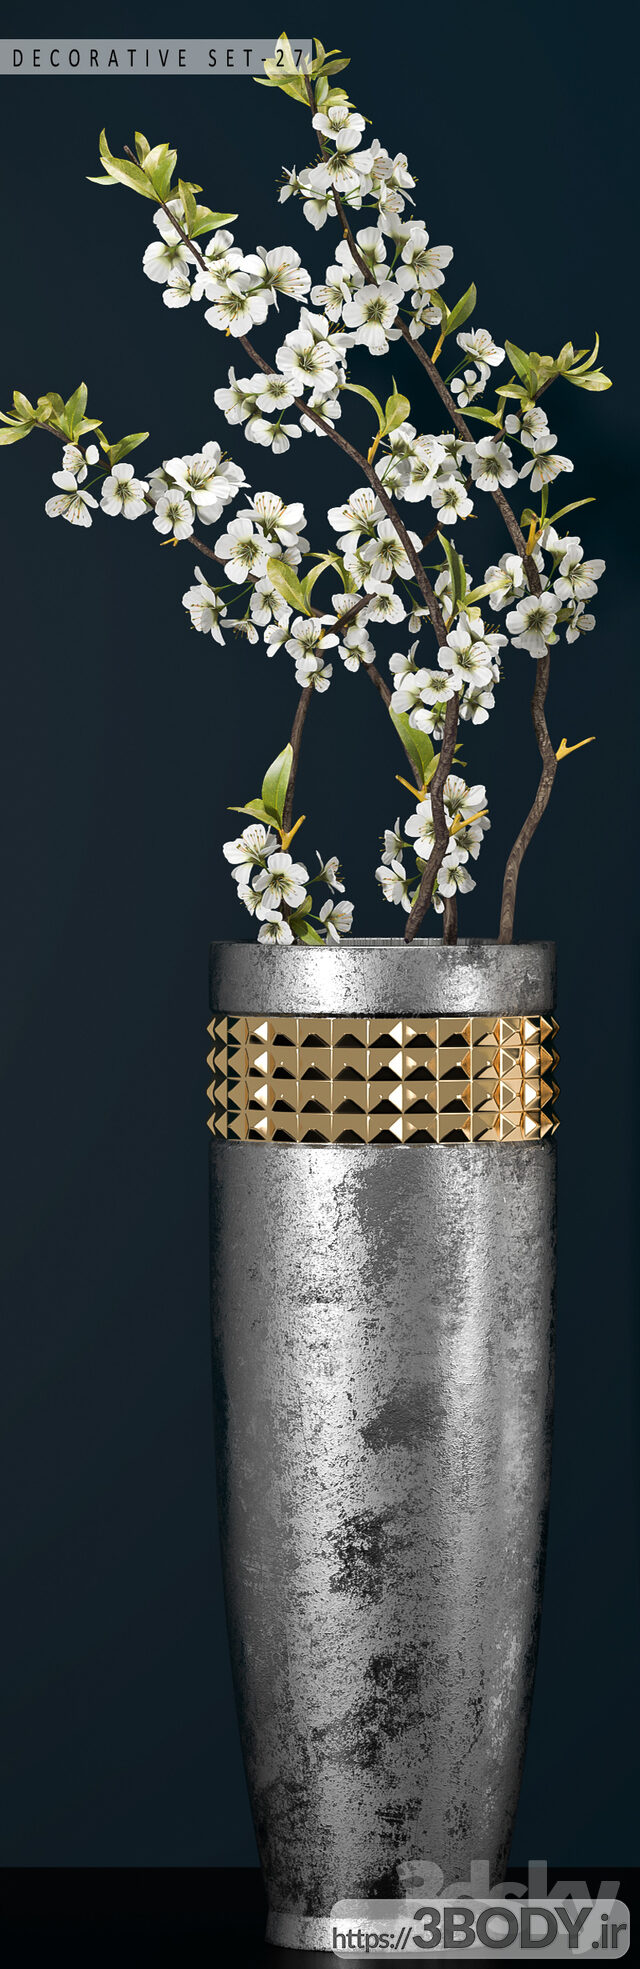 آبجکت سه بعدی ست تزئینی شکوفه ی بهاری عکس 3